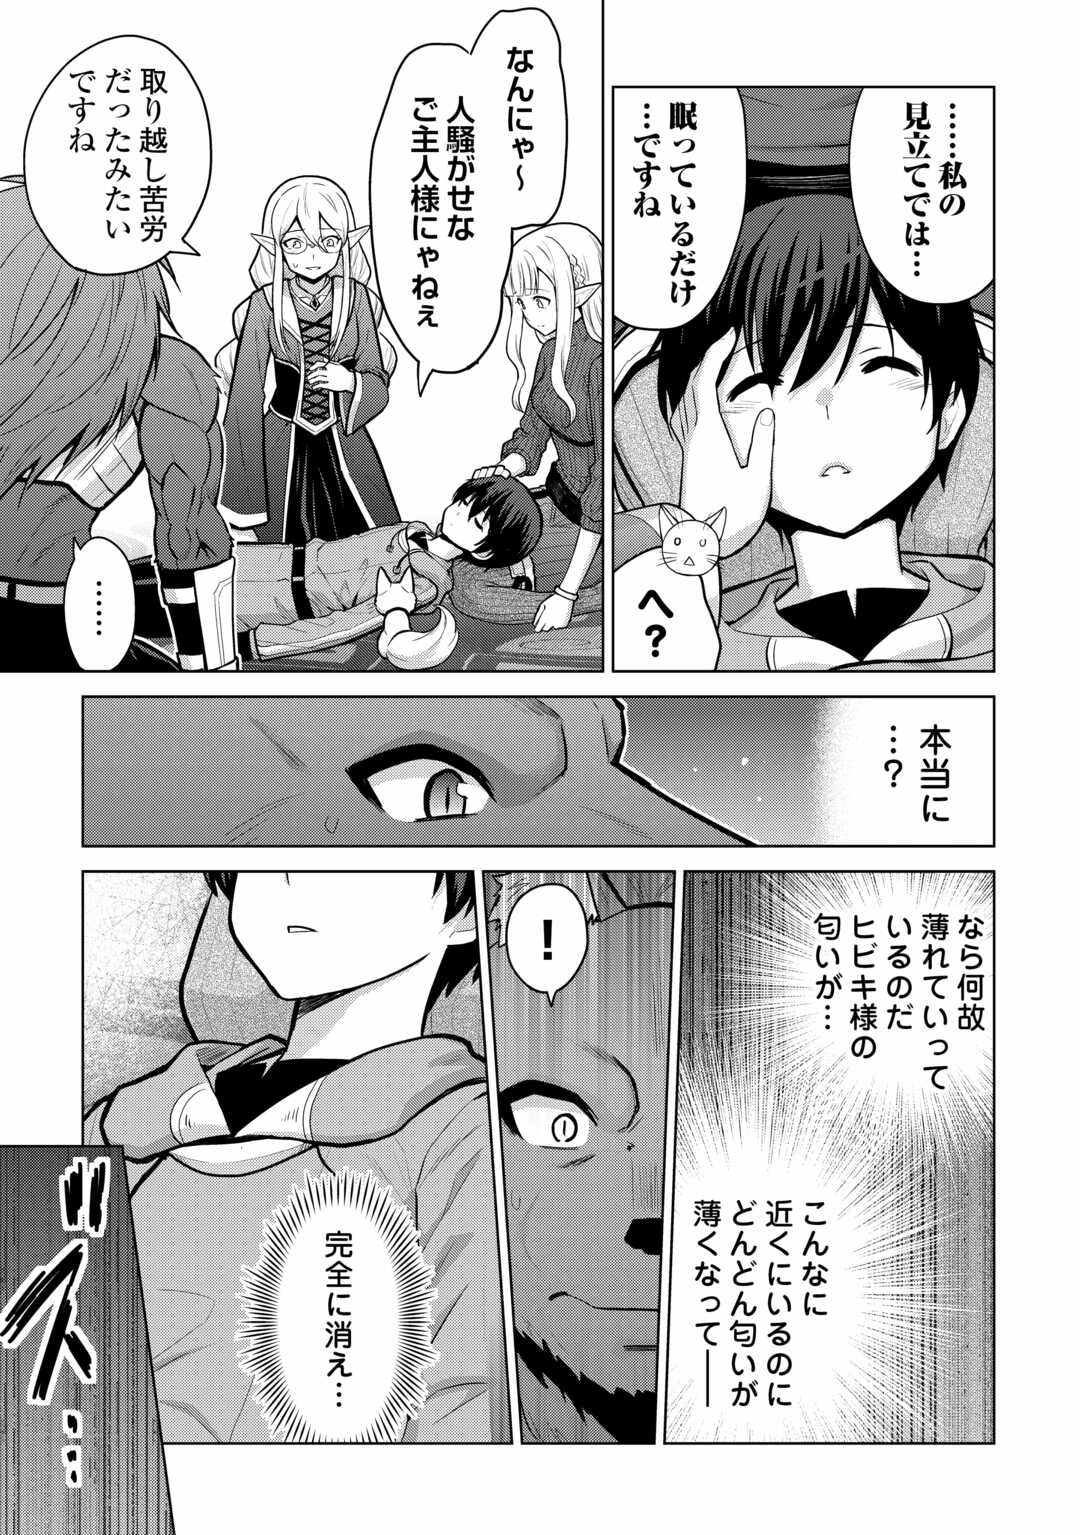 Saikyou no Shokugyou wa Yuusha demo Kenja demo naku Kanteishi (Kari) rashii desu yo? - Chapter 59 - Page 3